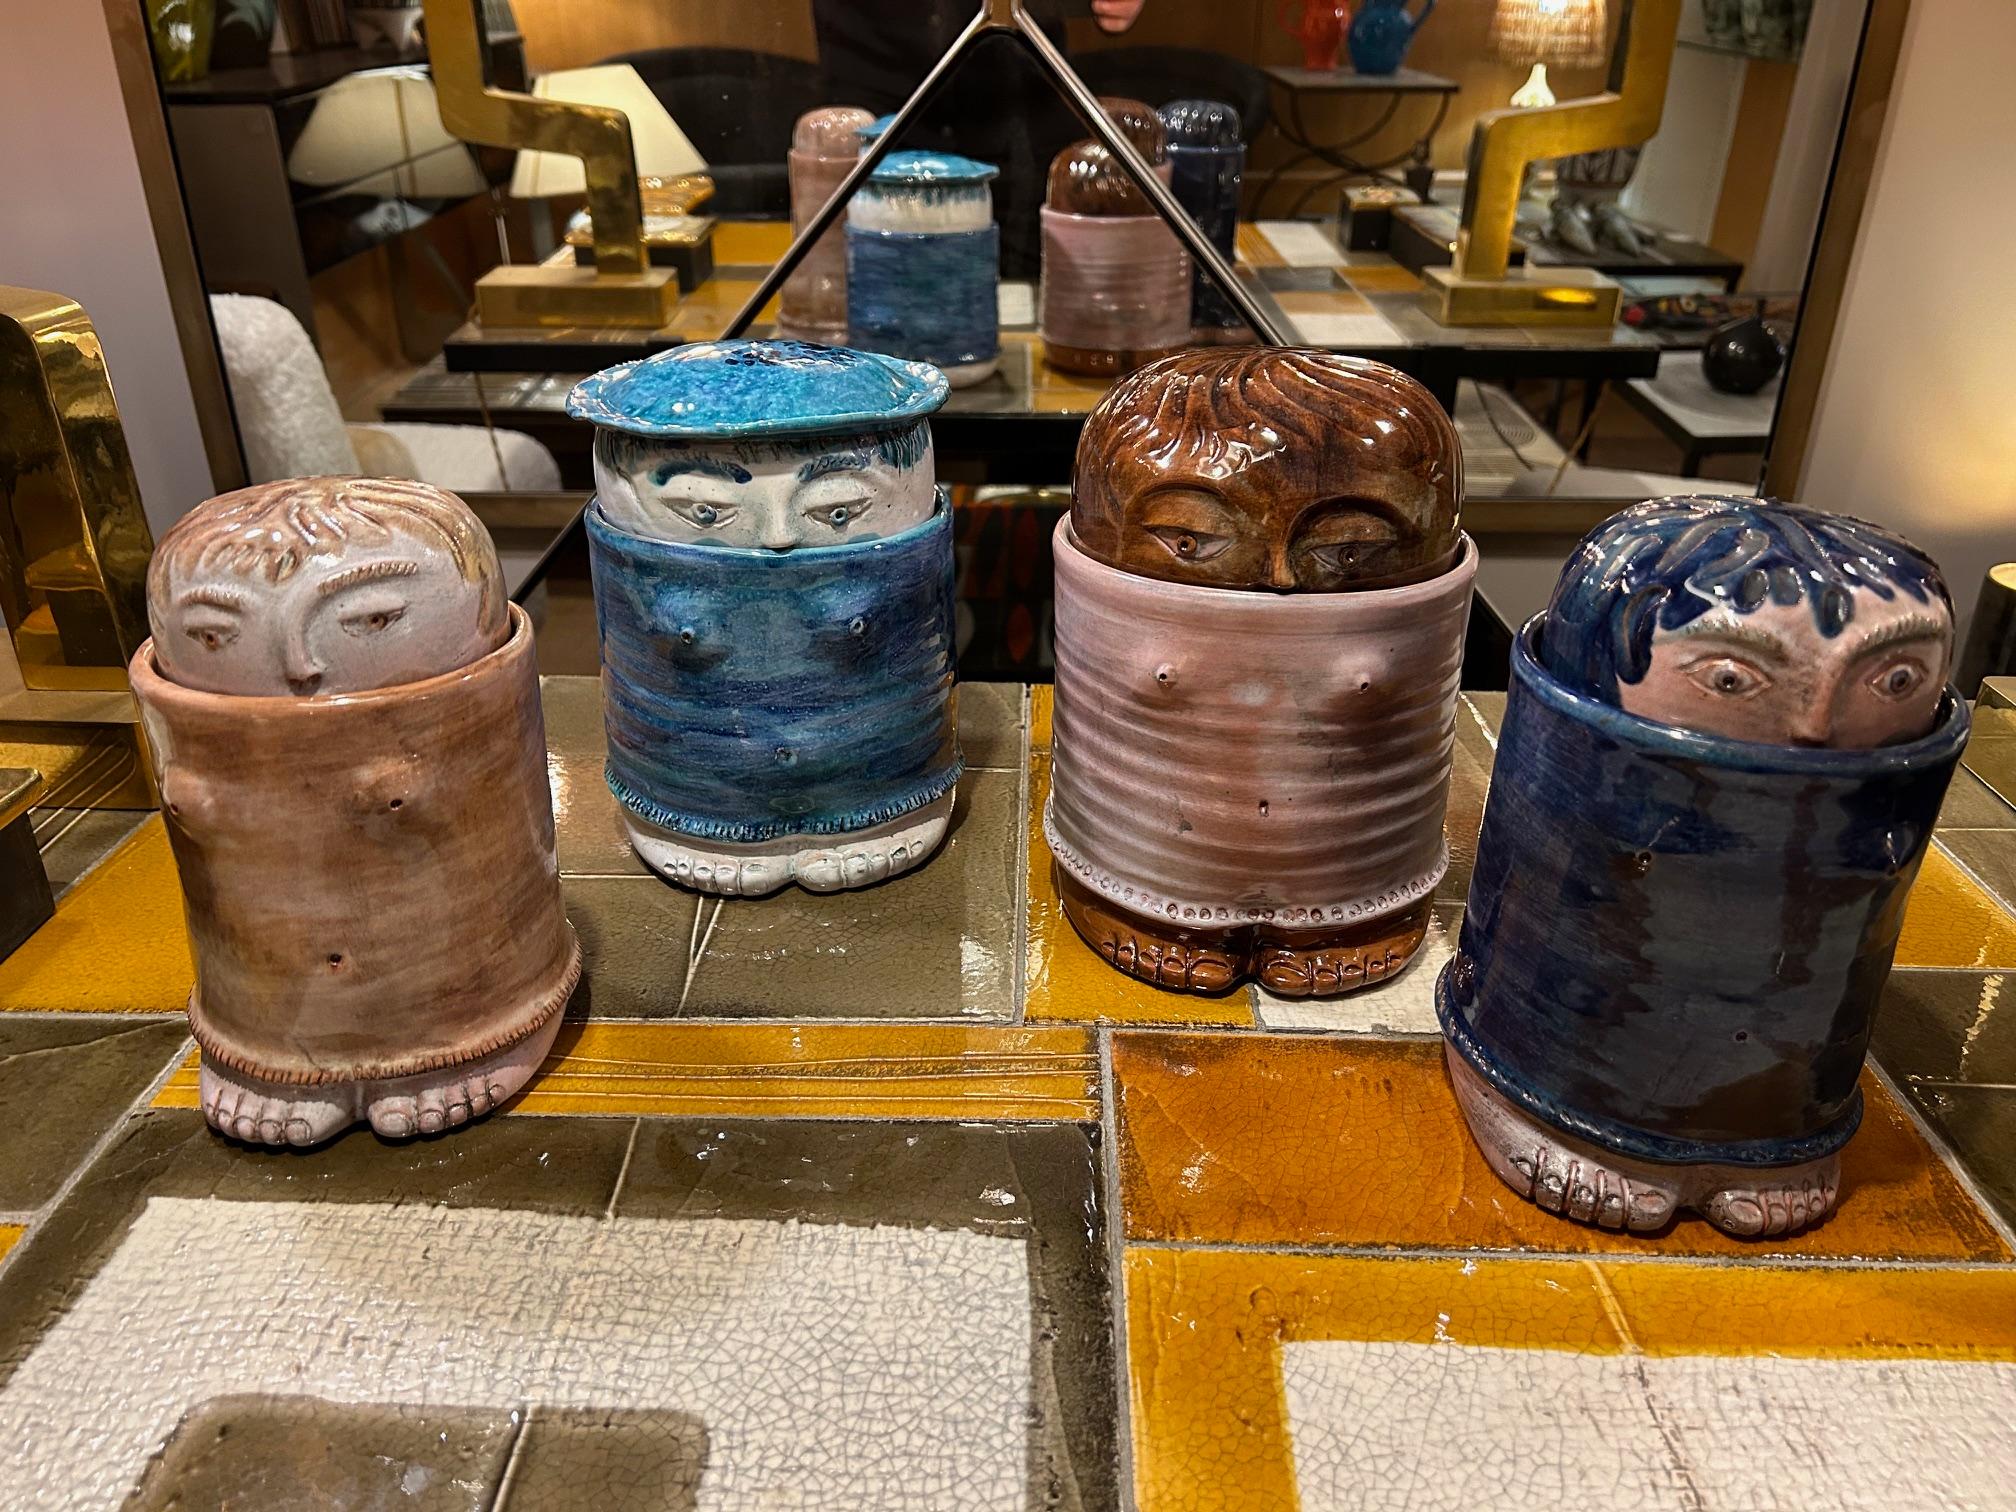 Vier anthropomorphe Keramikschachteln von Cloutier.
Zwei 